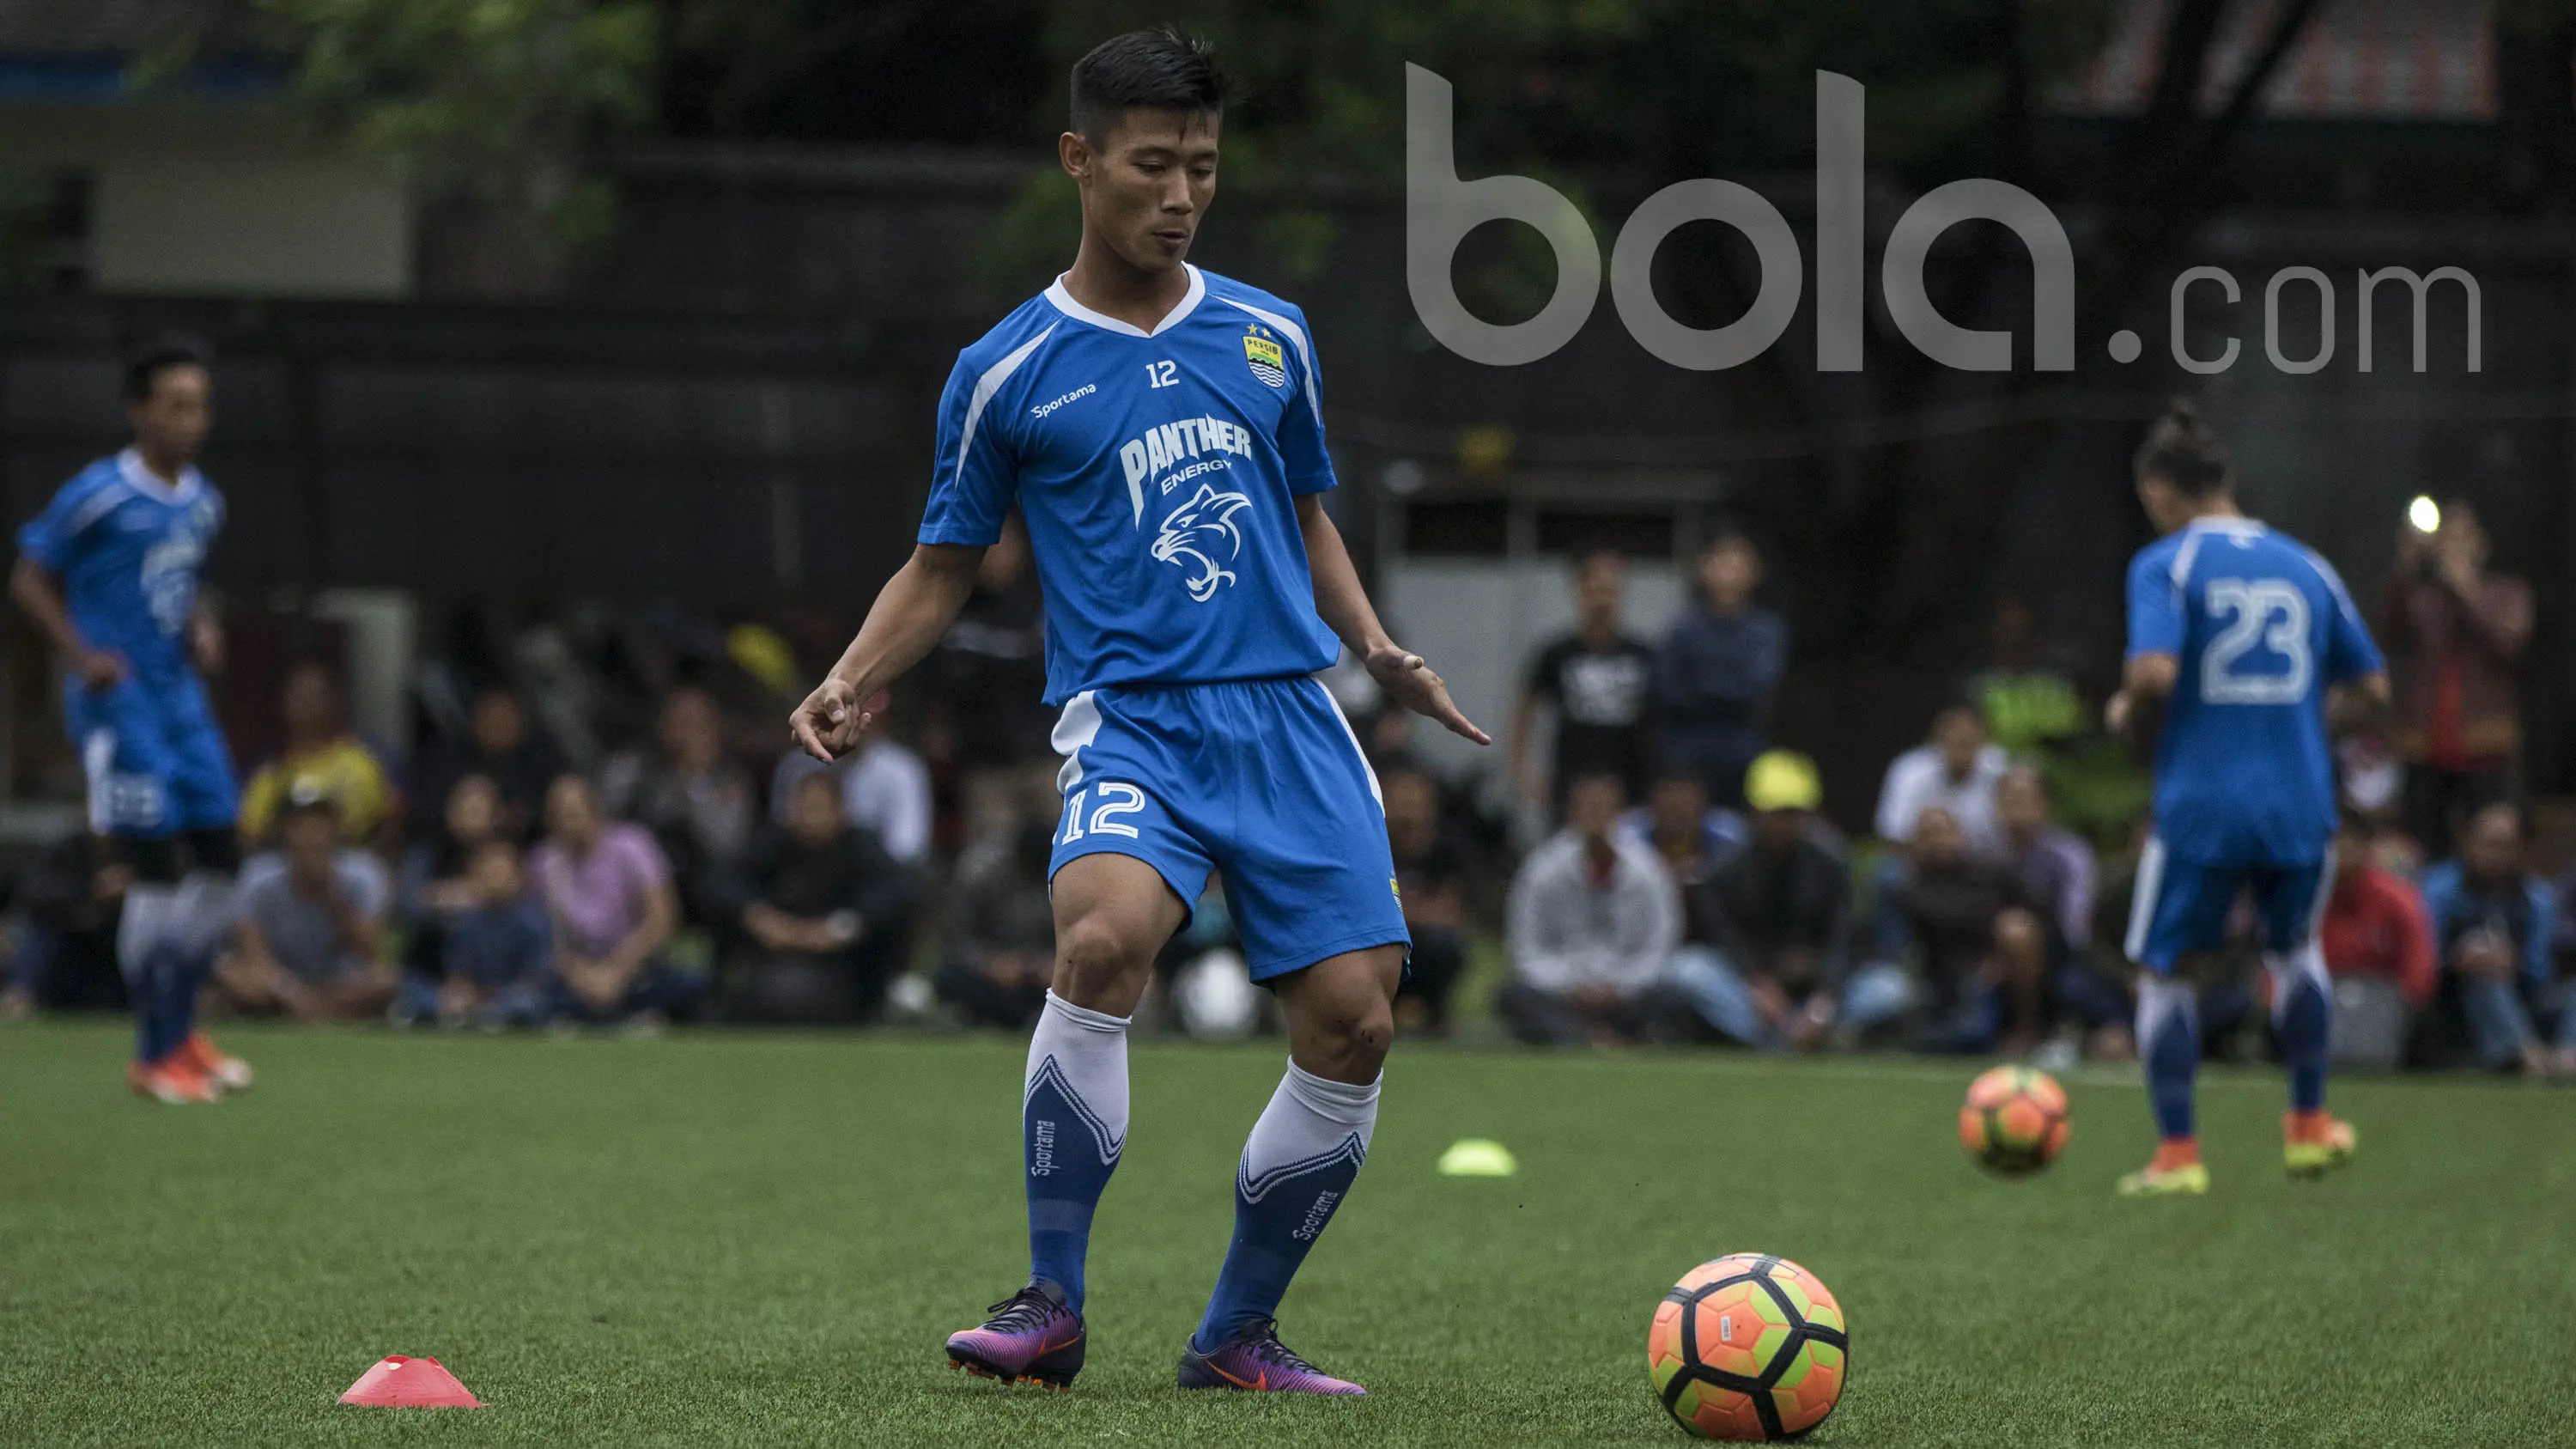 Bek Persib Bandung, Henhen Herdiana, mengontrol bola saat latihan di Lapangan Lodaya Bandung, Jawa Barat, Selasa (28/3/2017). (Bola.com/Vitalis Yogi Trisna)